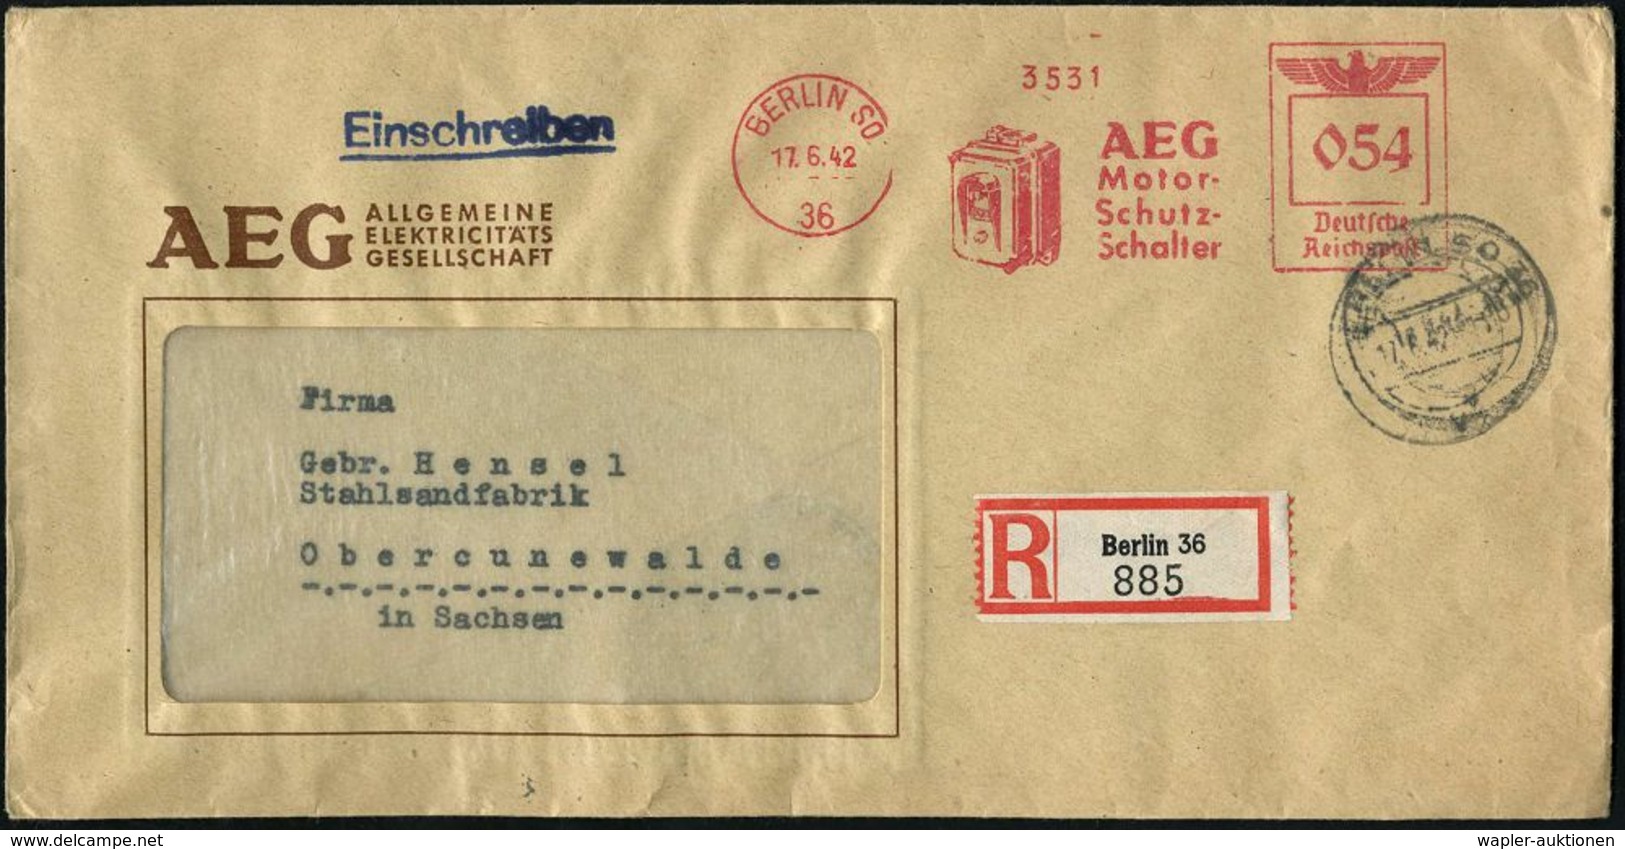 BERLIN SO/ 36/ AEG/ Motor-/ Schutz-/ Schalter 1942 (17.6.) AFS 054 Pf. = Schutzschalter + RZ: Berlin 36, AEG-Firmen-R-Bf - Electricité